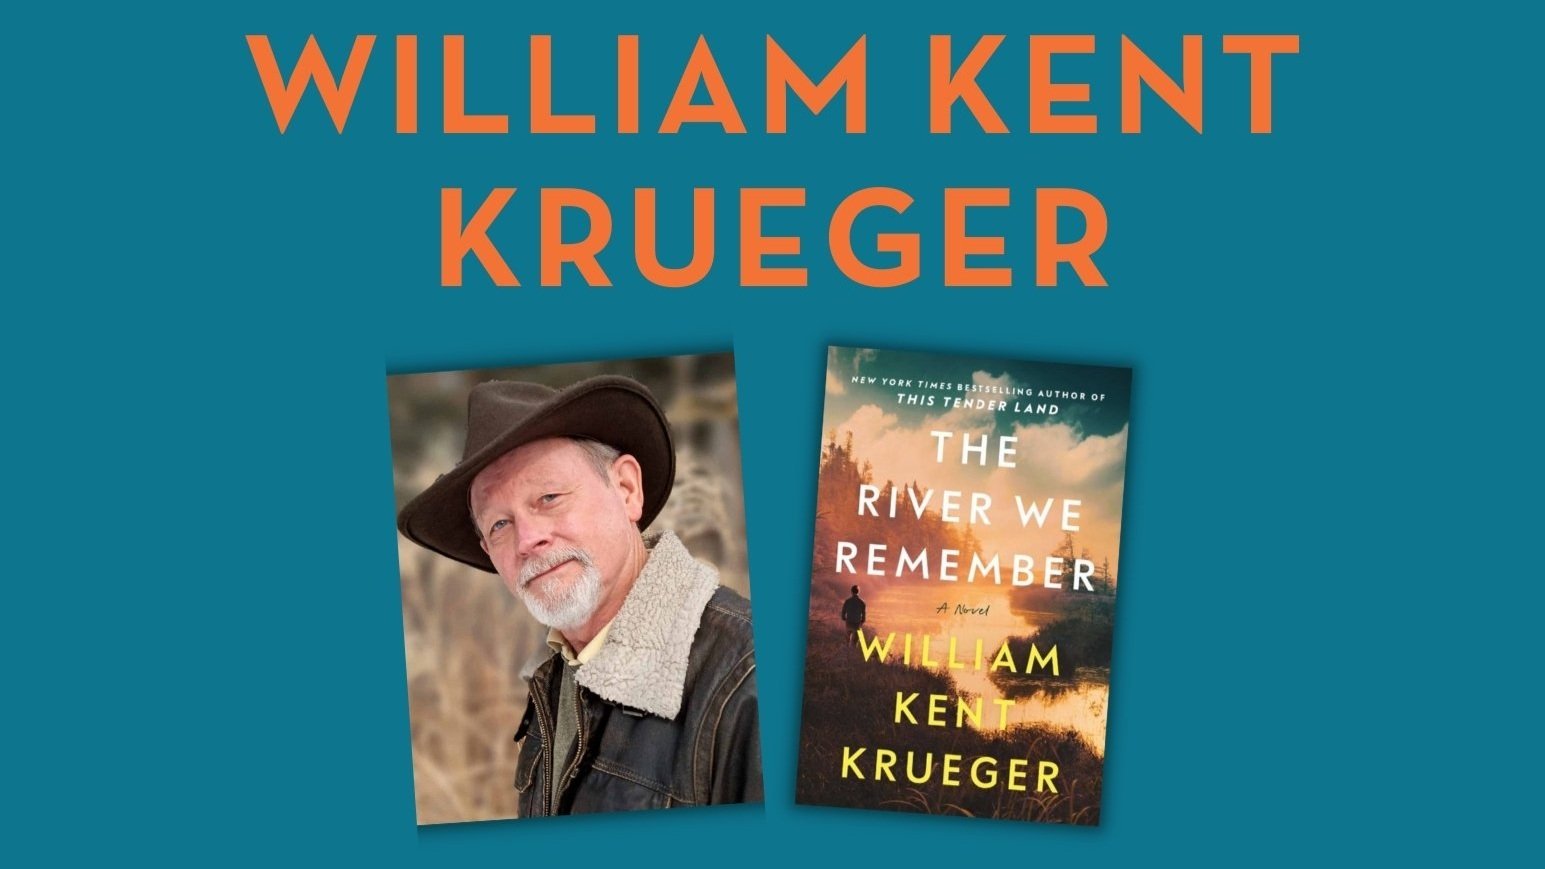 William Kent Krueger